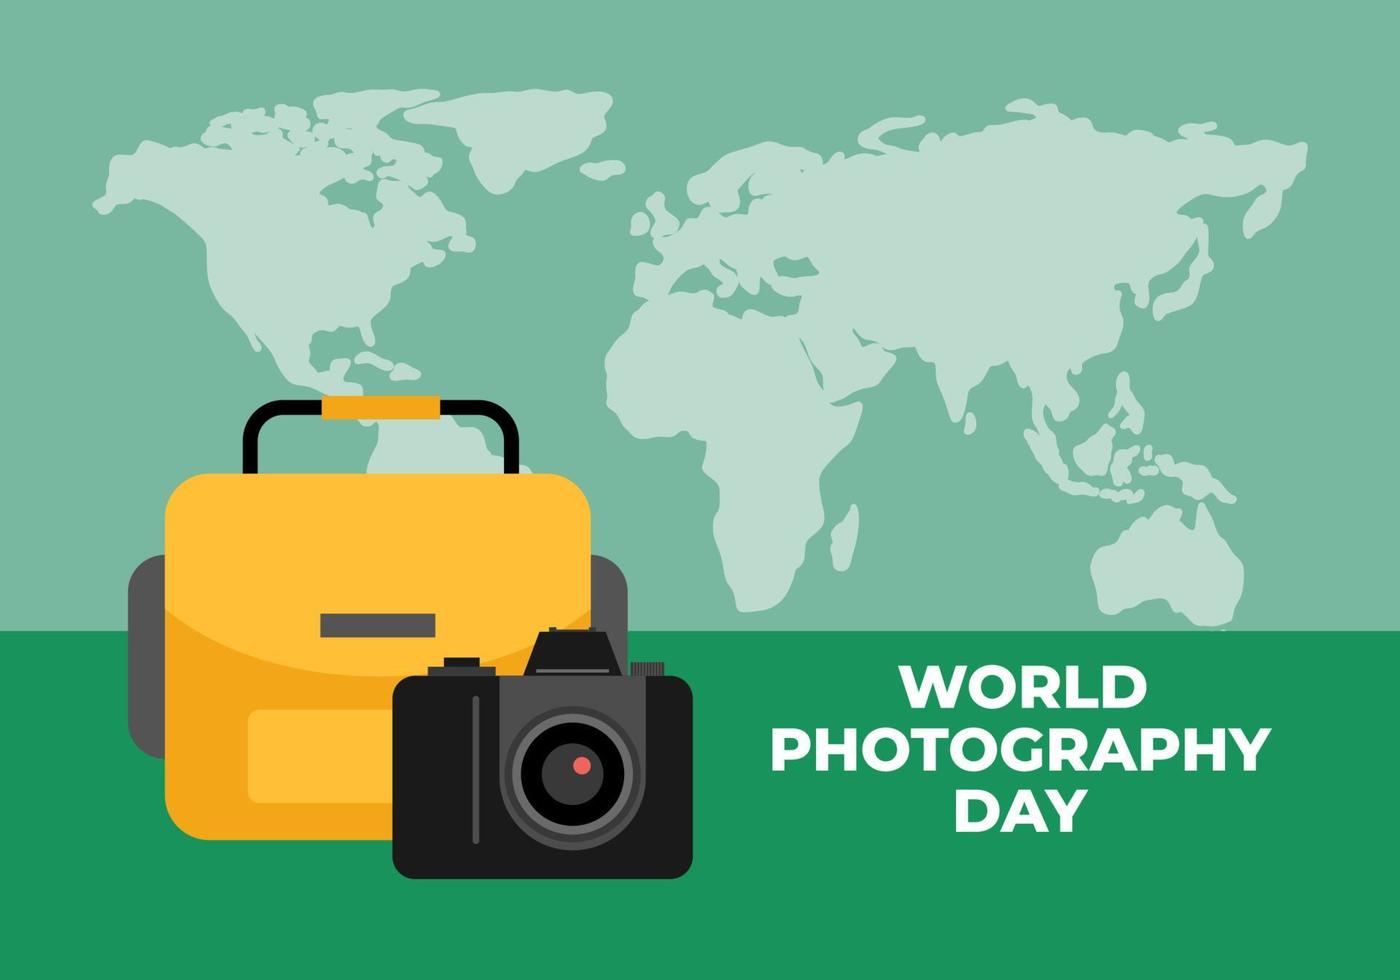 wereldfotografie dag spandoek poster op 19 augustus met cameratas en wereldkaart op groene achtergrond. vector